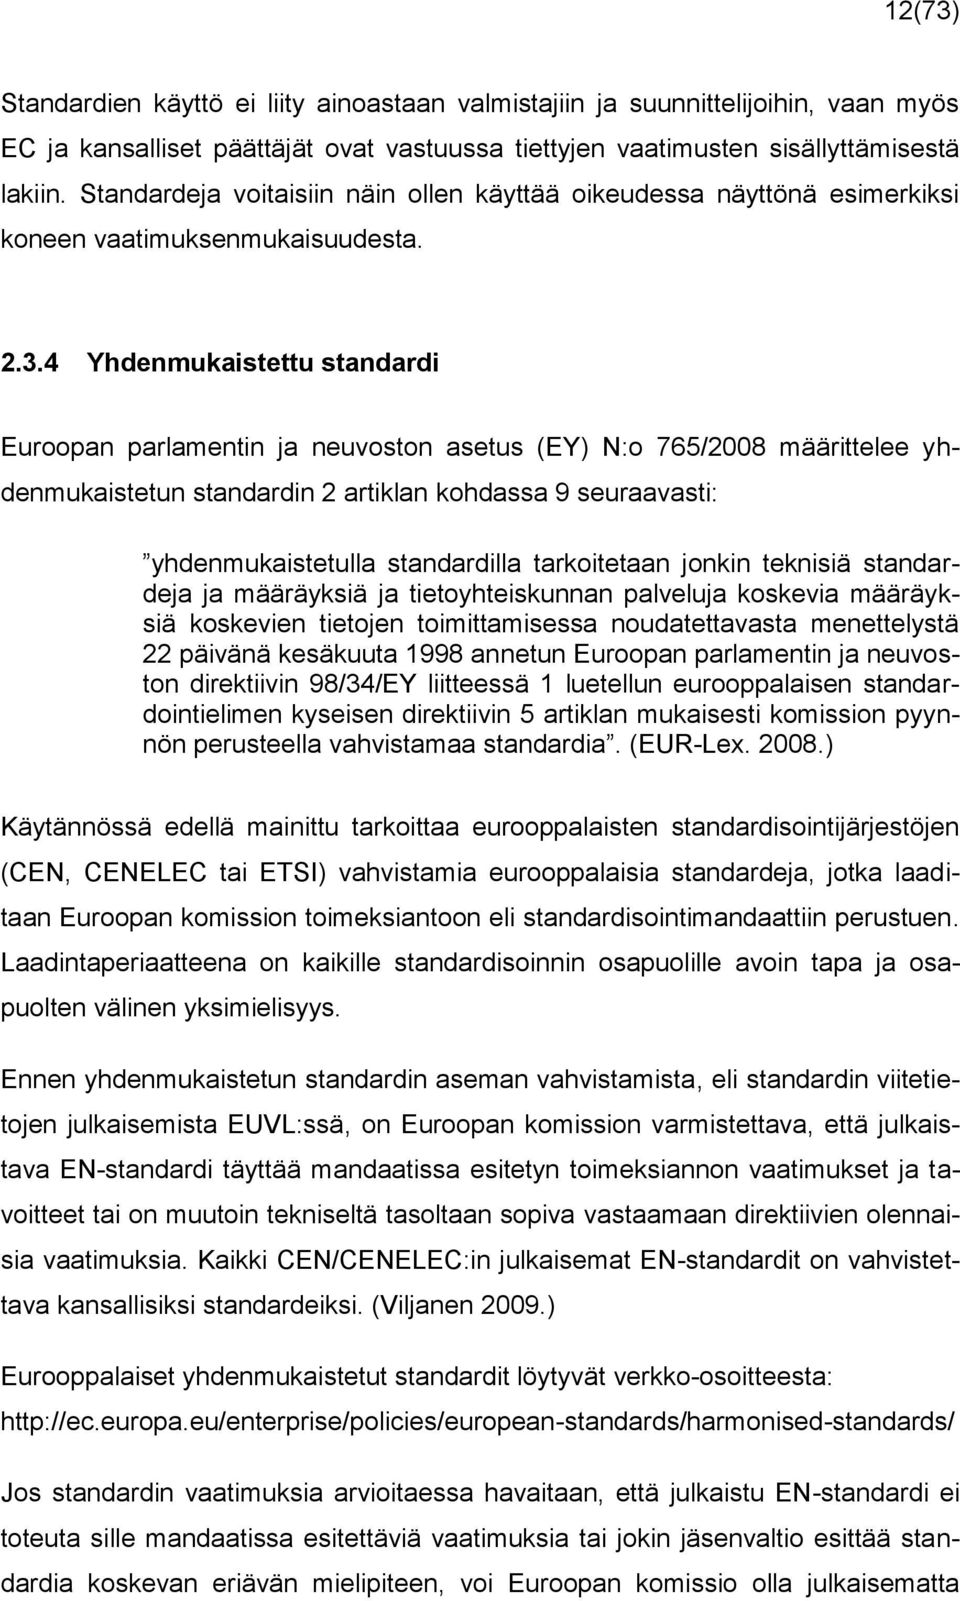 4 Yhdenmukaistettu standardi Euroopan parlamentin ja neuvoston asetus (EY) N:o 765/2008 määrittelee yhdenmukaistetun standardin 2 artiklan kohdassa 9 seuraavasti: yhdenmukaistetulla standardilla